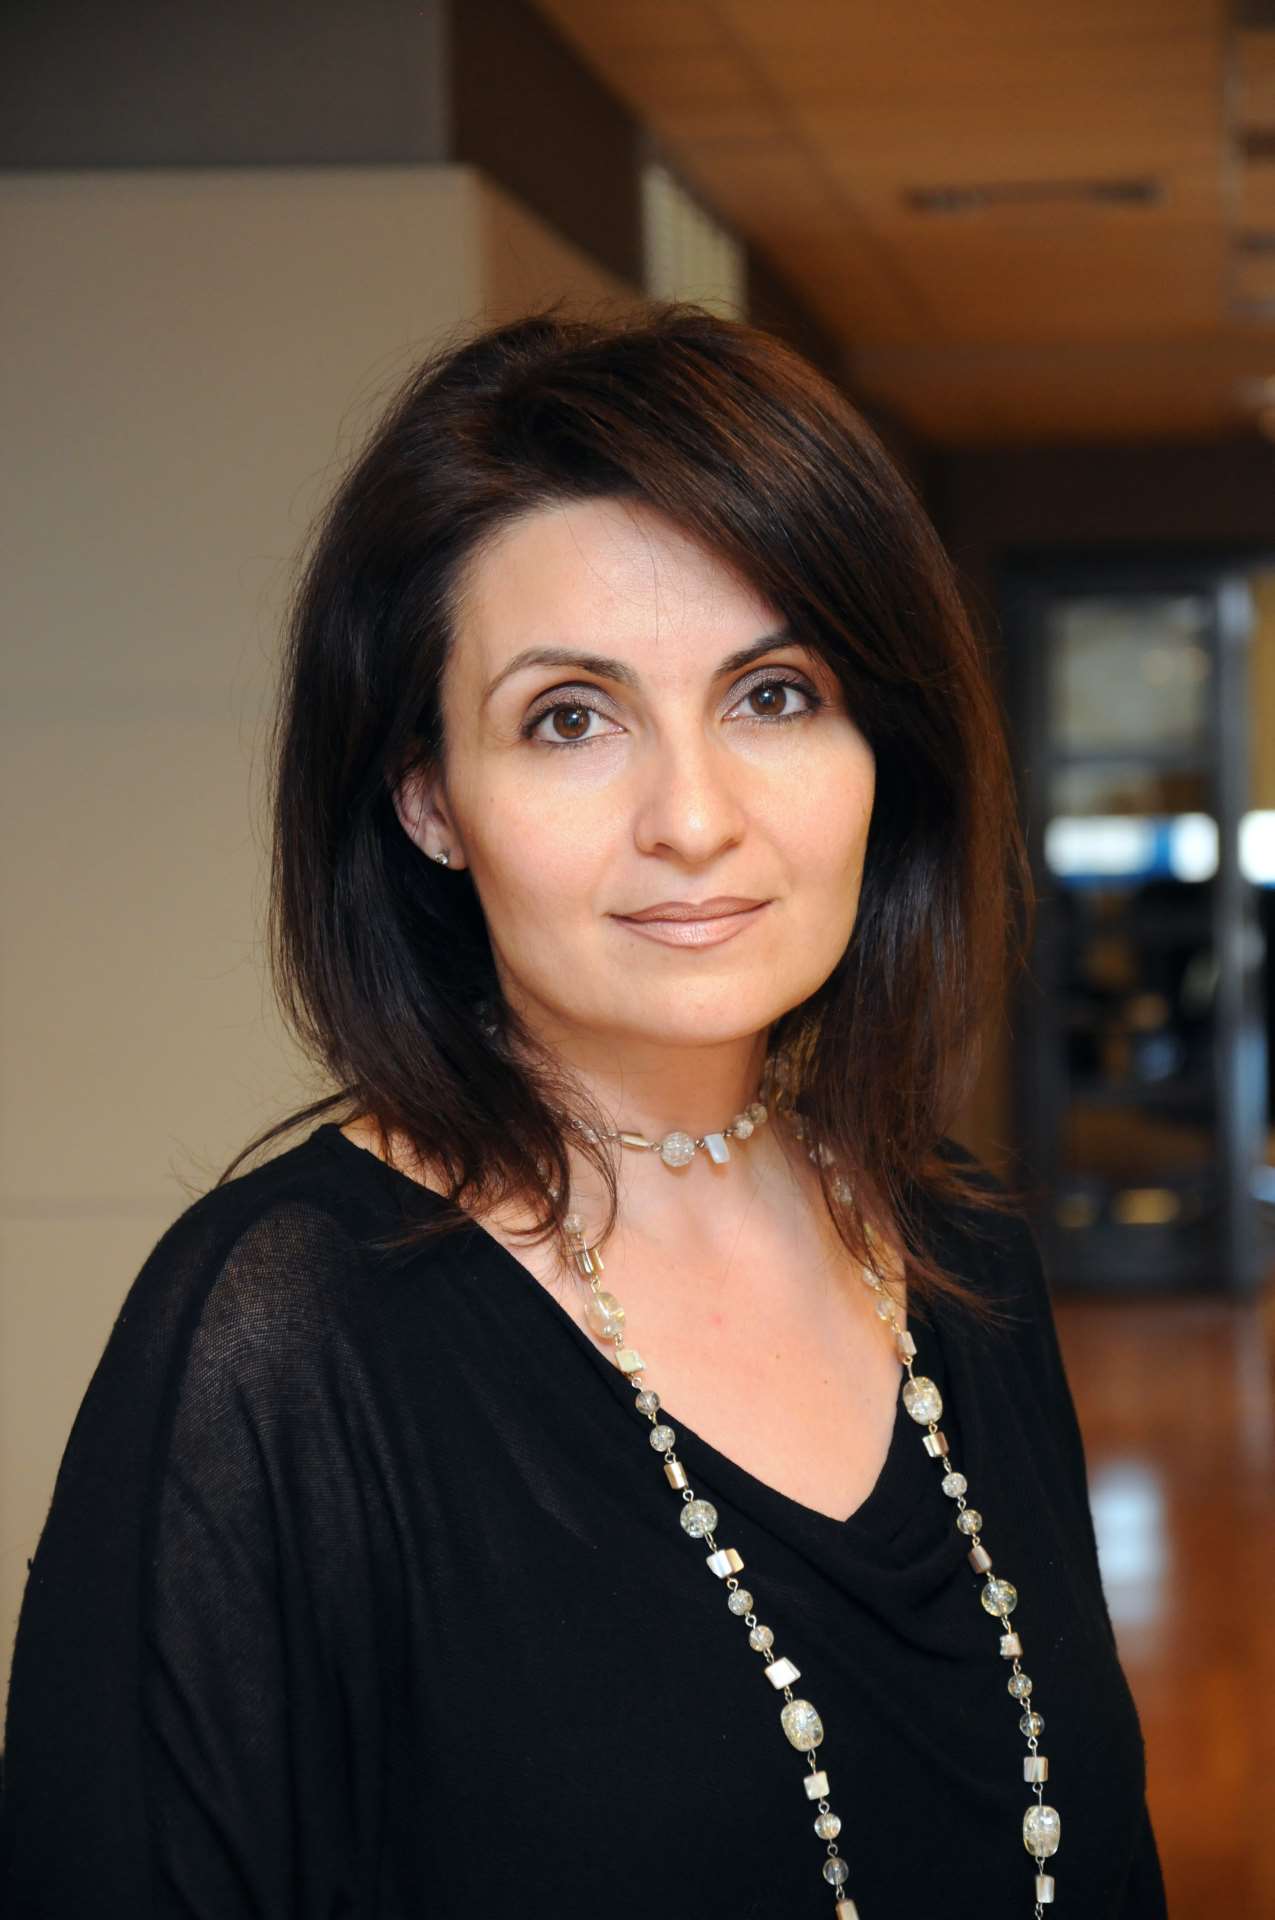 Μαρία Λαμπροπούλου: Συνέντευξη στο περιοδικό Insurance World